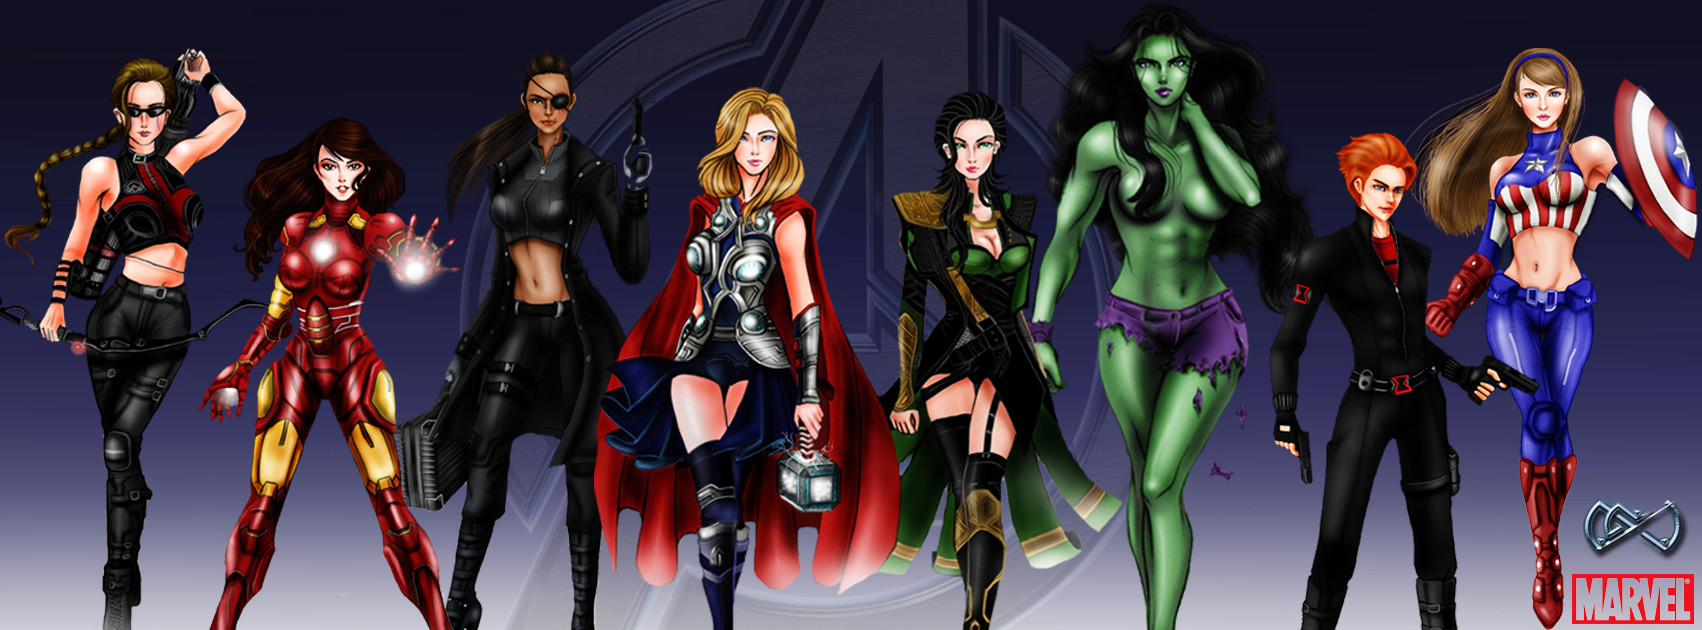 Avengers: Gender Swap.